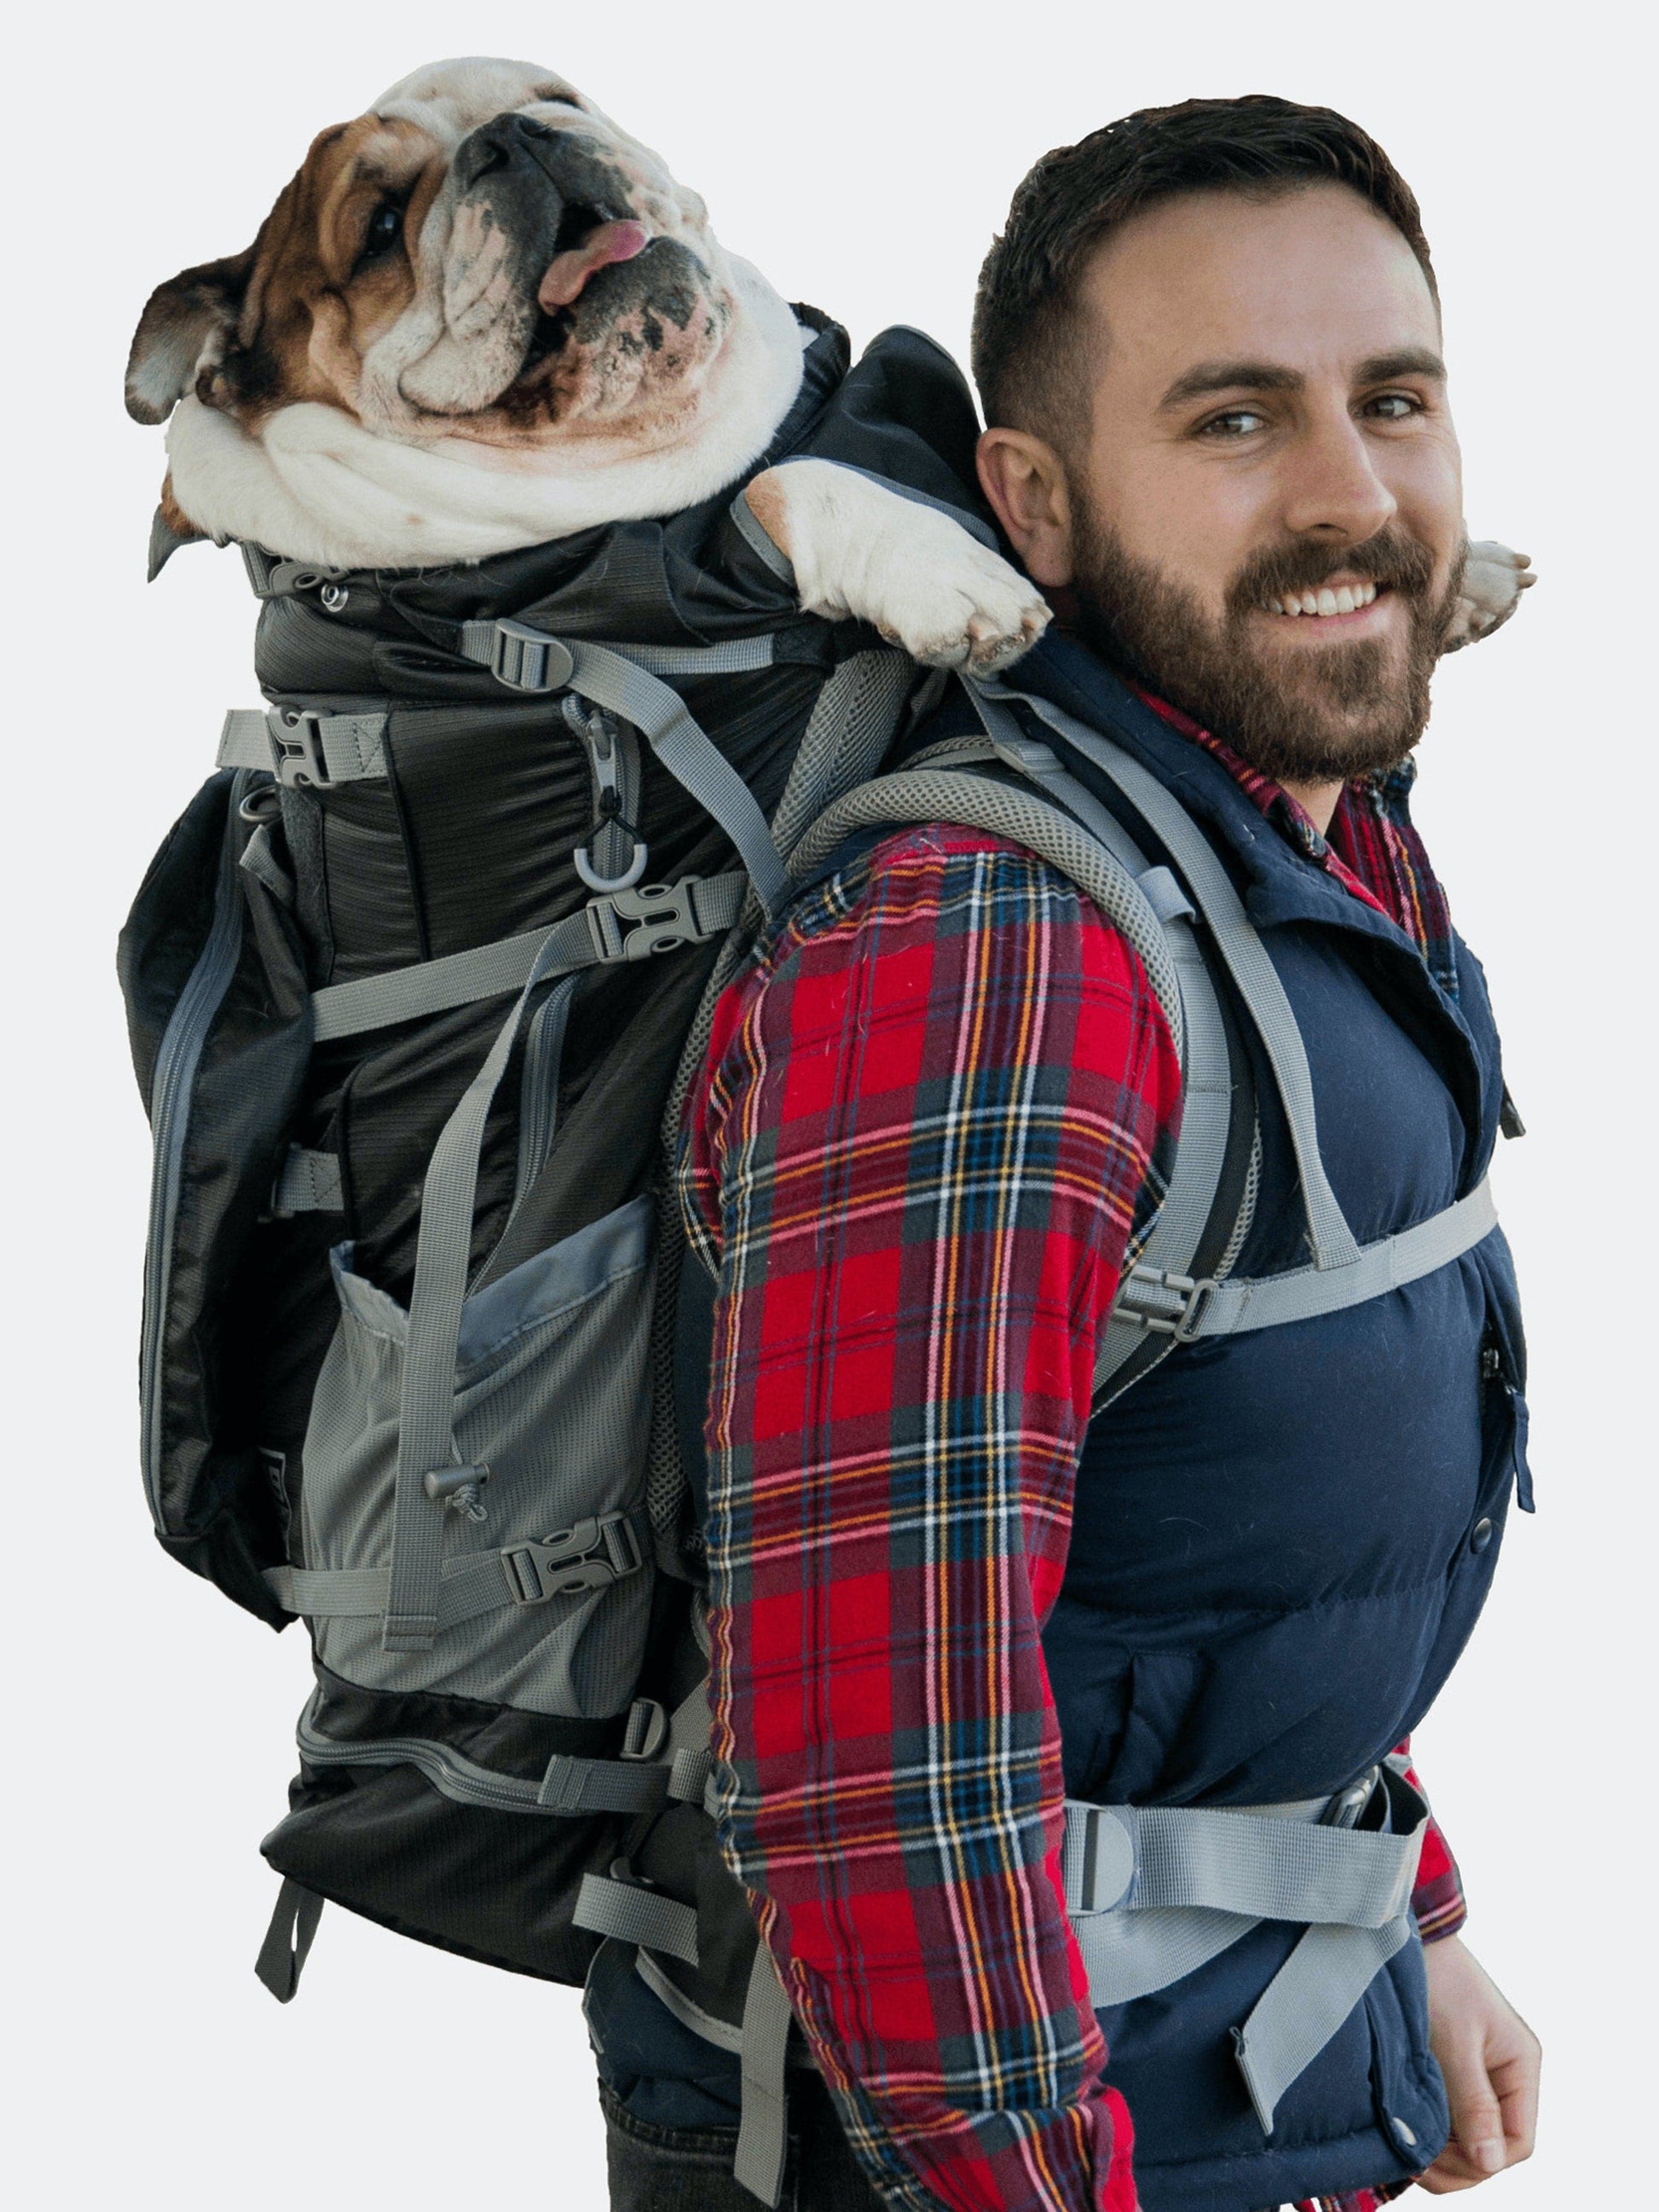 K9 Sport Sack Big Dog Carrier & Backpacking Pack